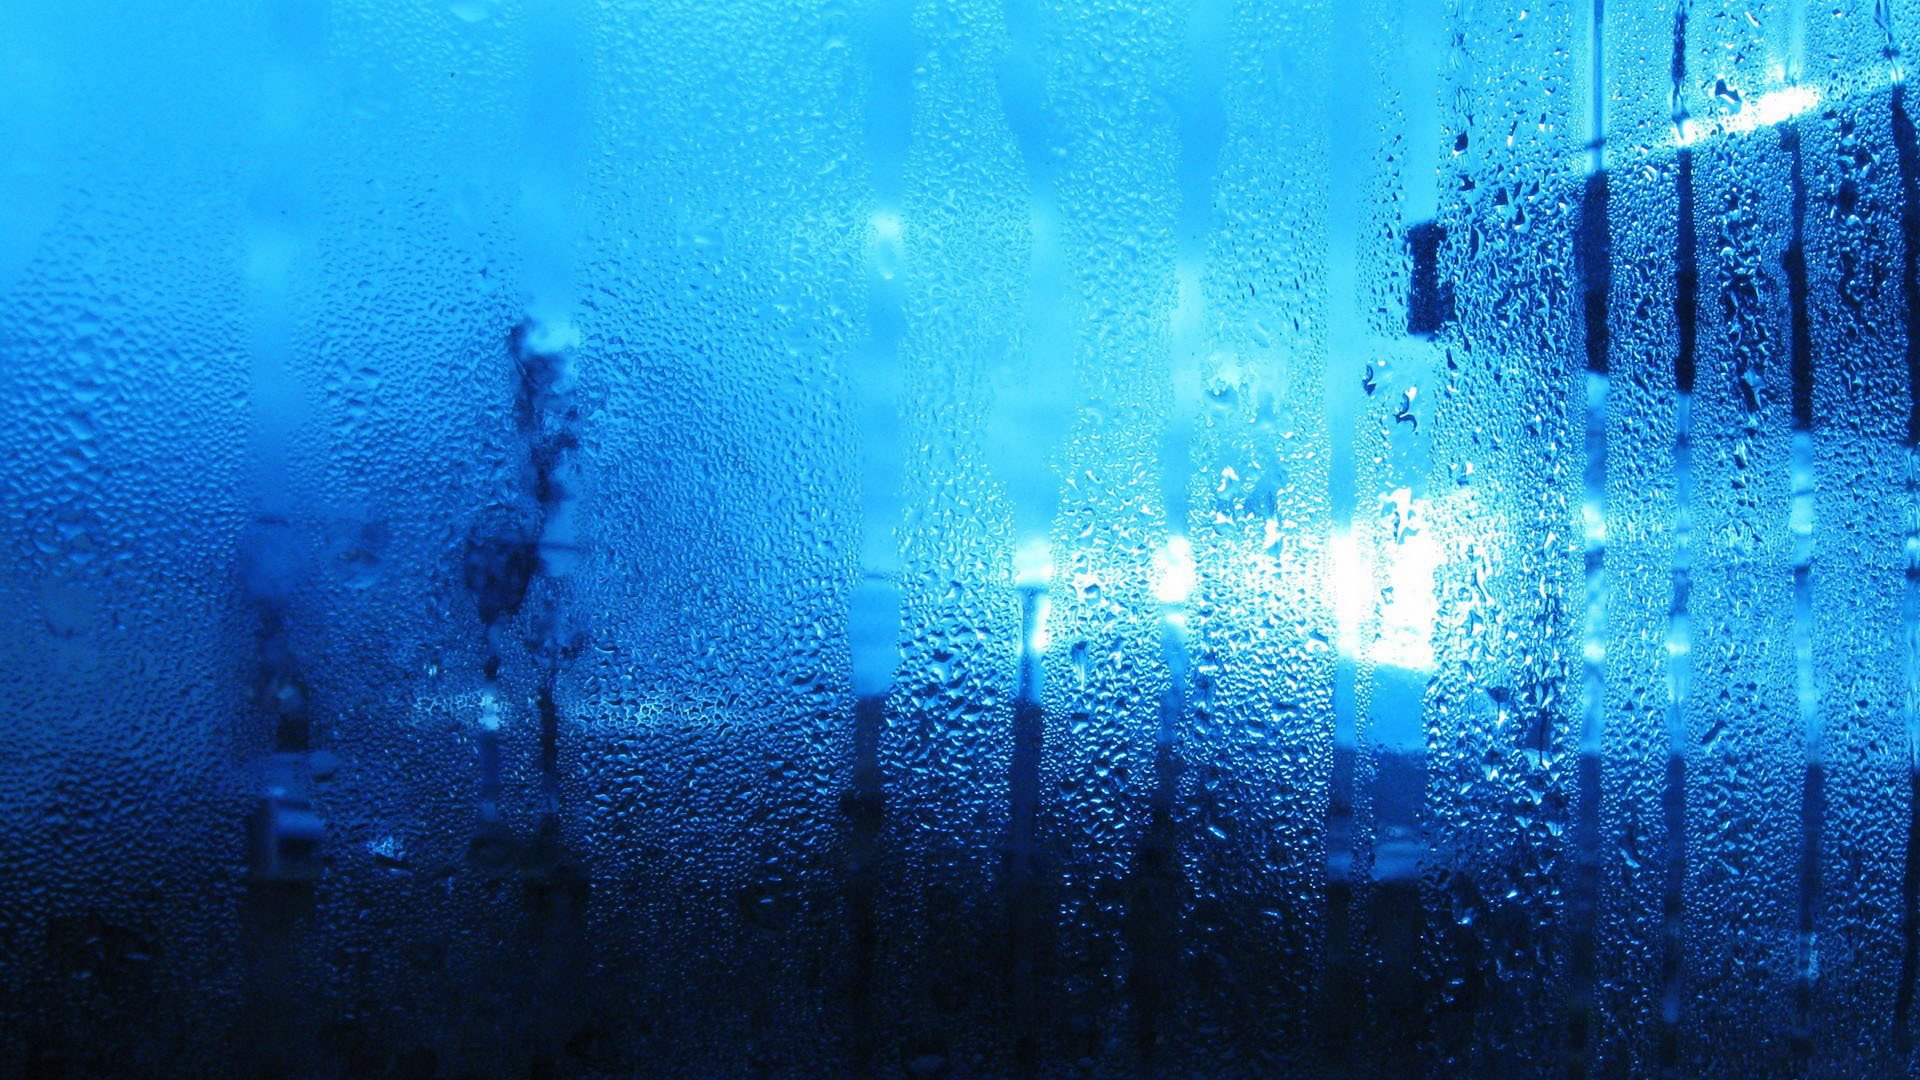 Капли голубая вода. Капли на стекле. Стекло текстура. Стена воды. Синий дождь.